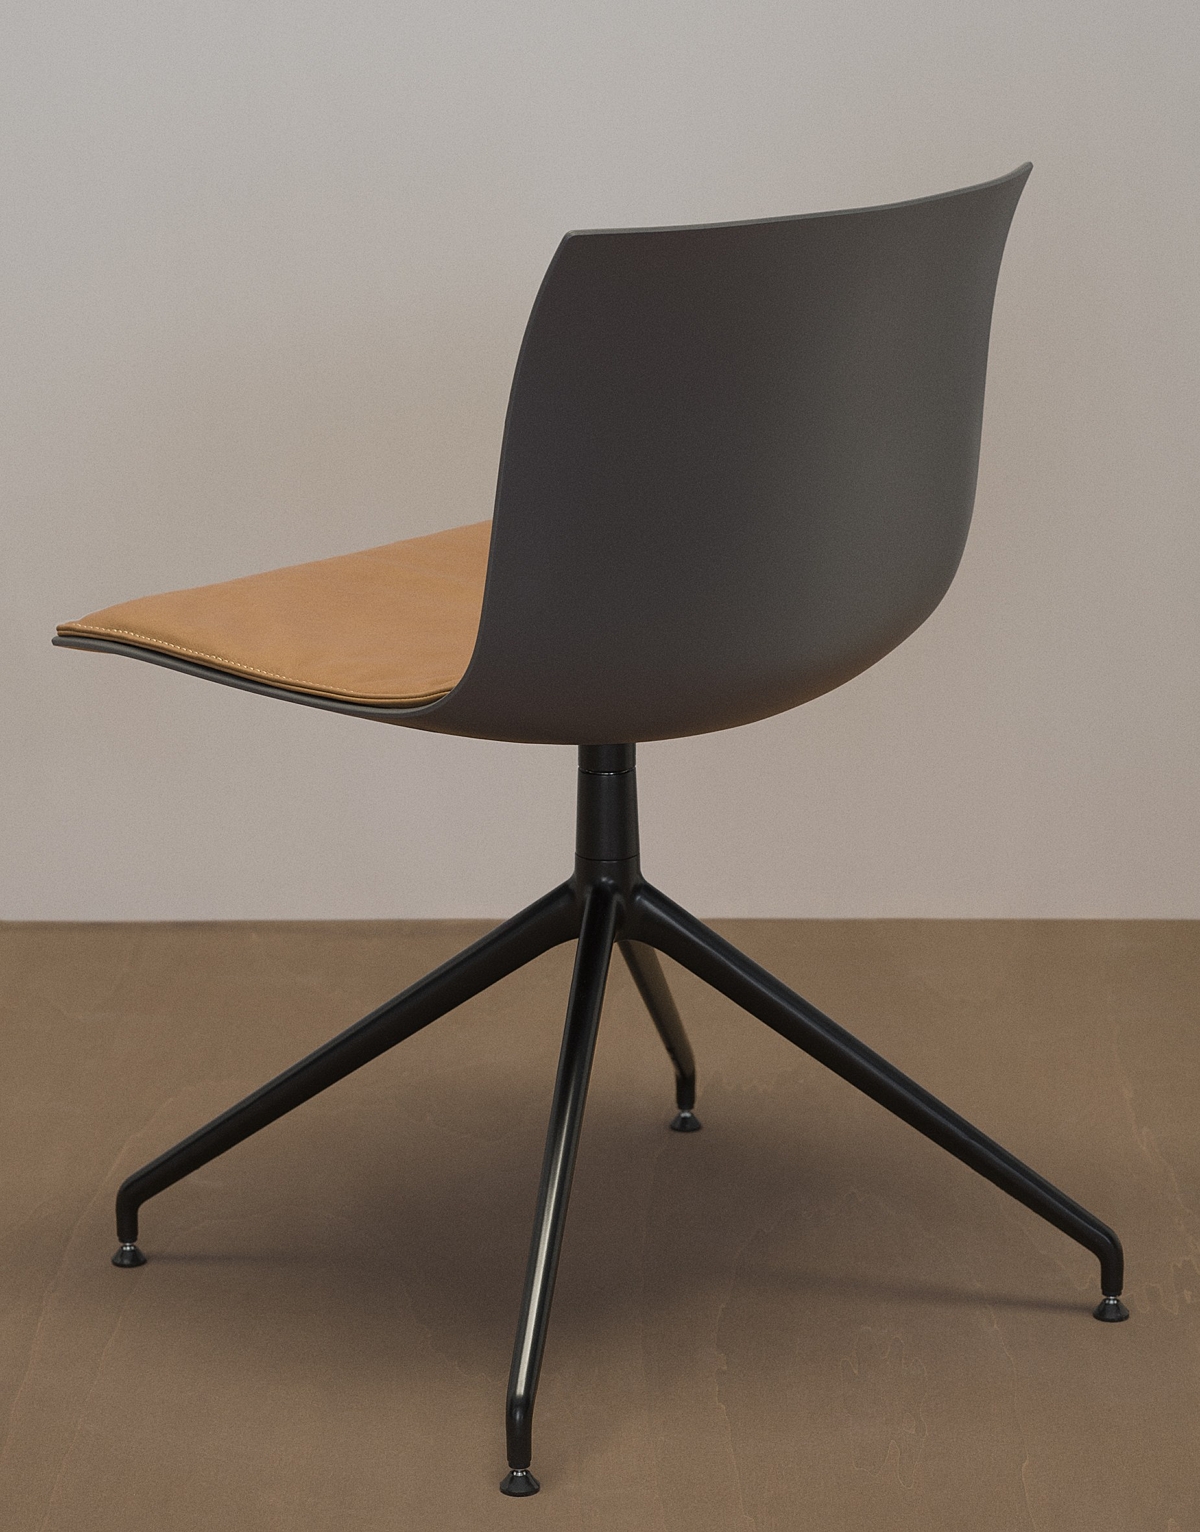 De design bureaustoelen van Arper voor een strak interieur. 